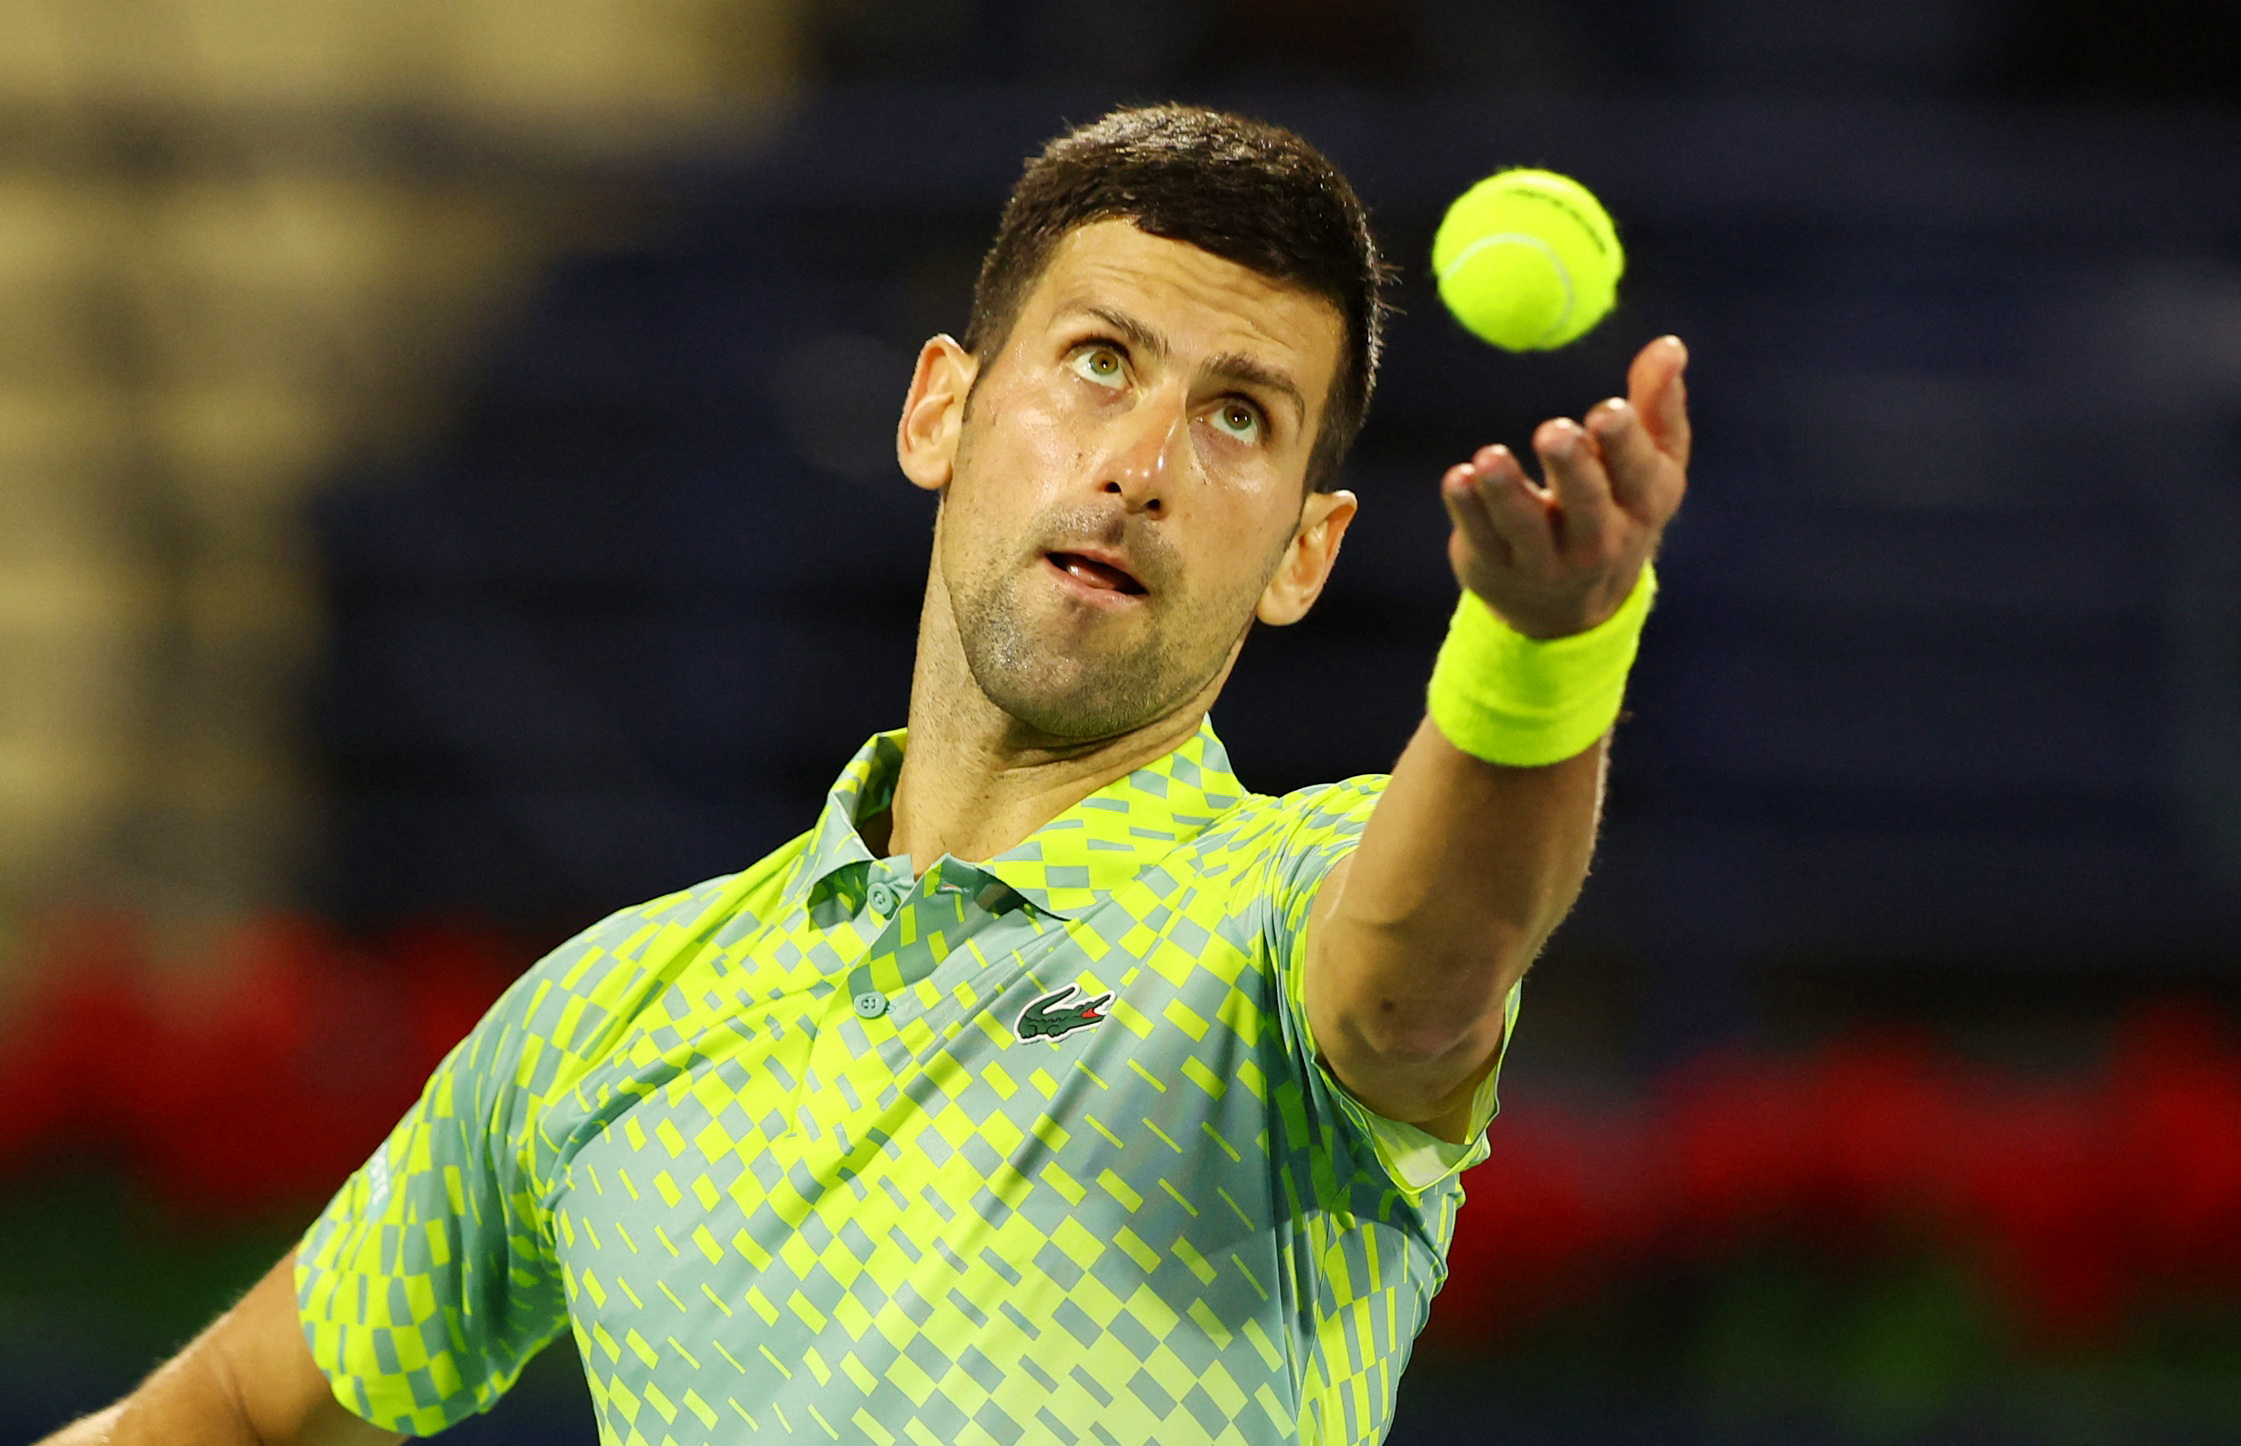 ATP Dubai Open: Djokovic Eyes First Title in 2022